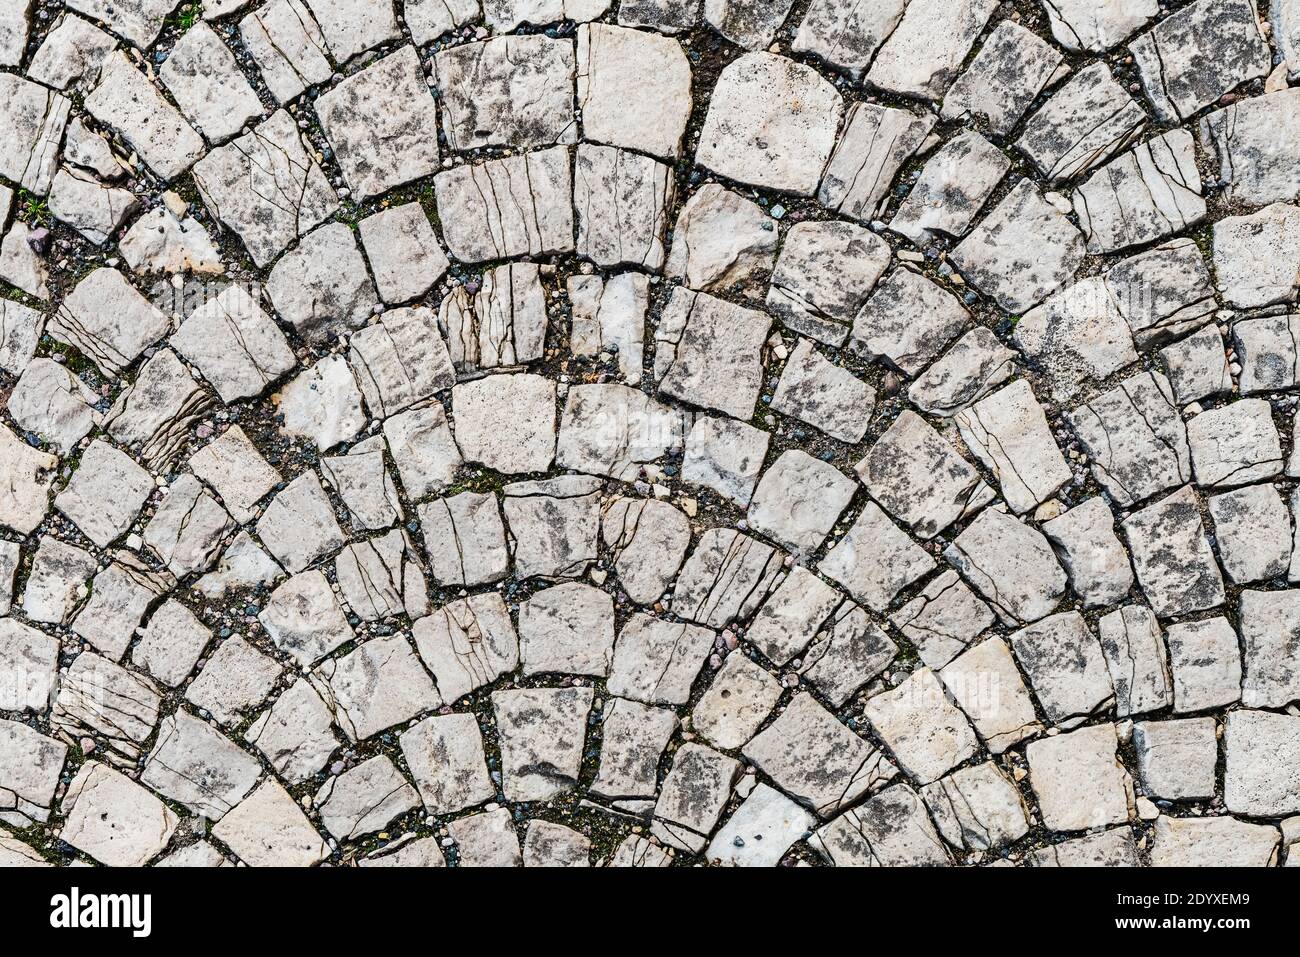 A square with cobblestones Stock Photo